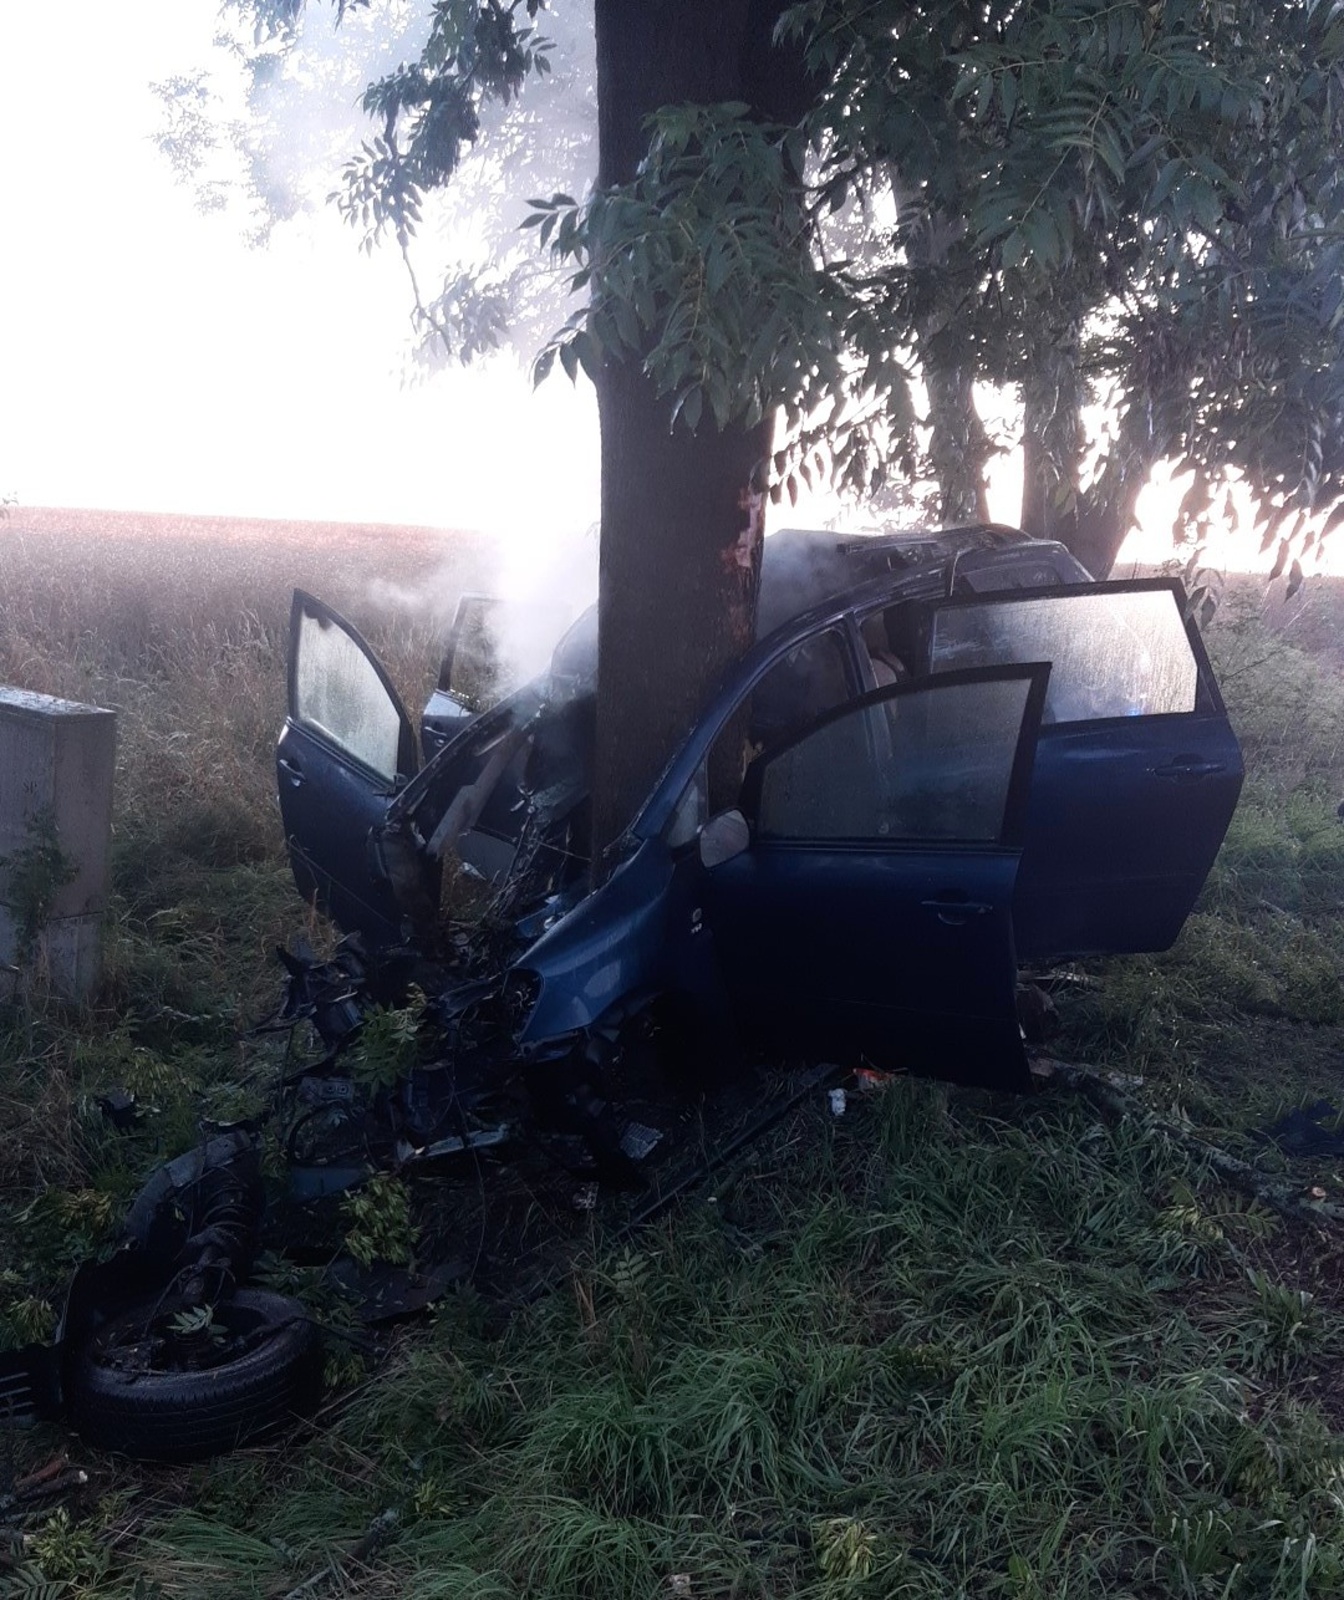 065-Havárie osobního auta s následným požárem v obci Dřevčice v okrese Praha-východ.jpg